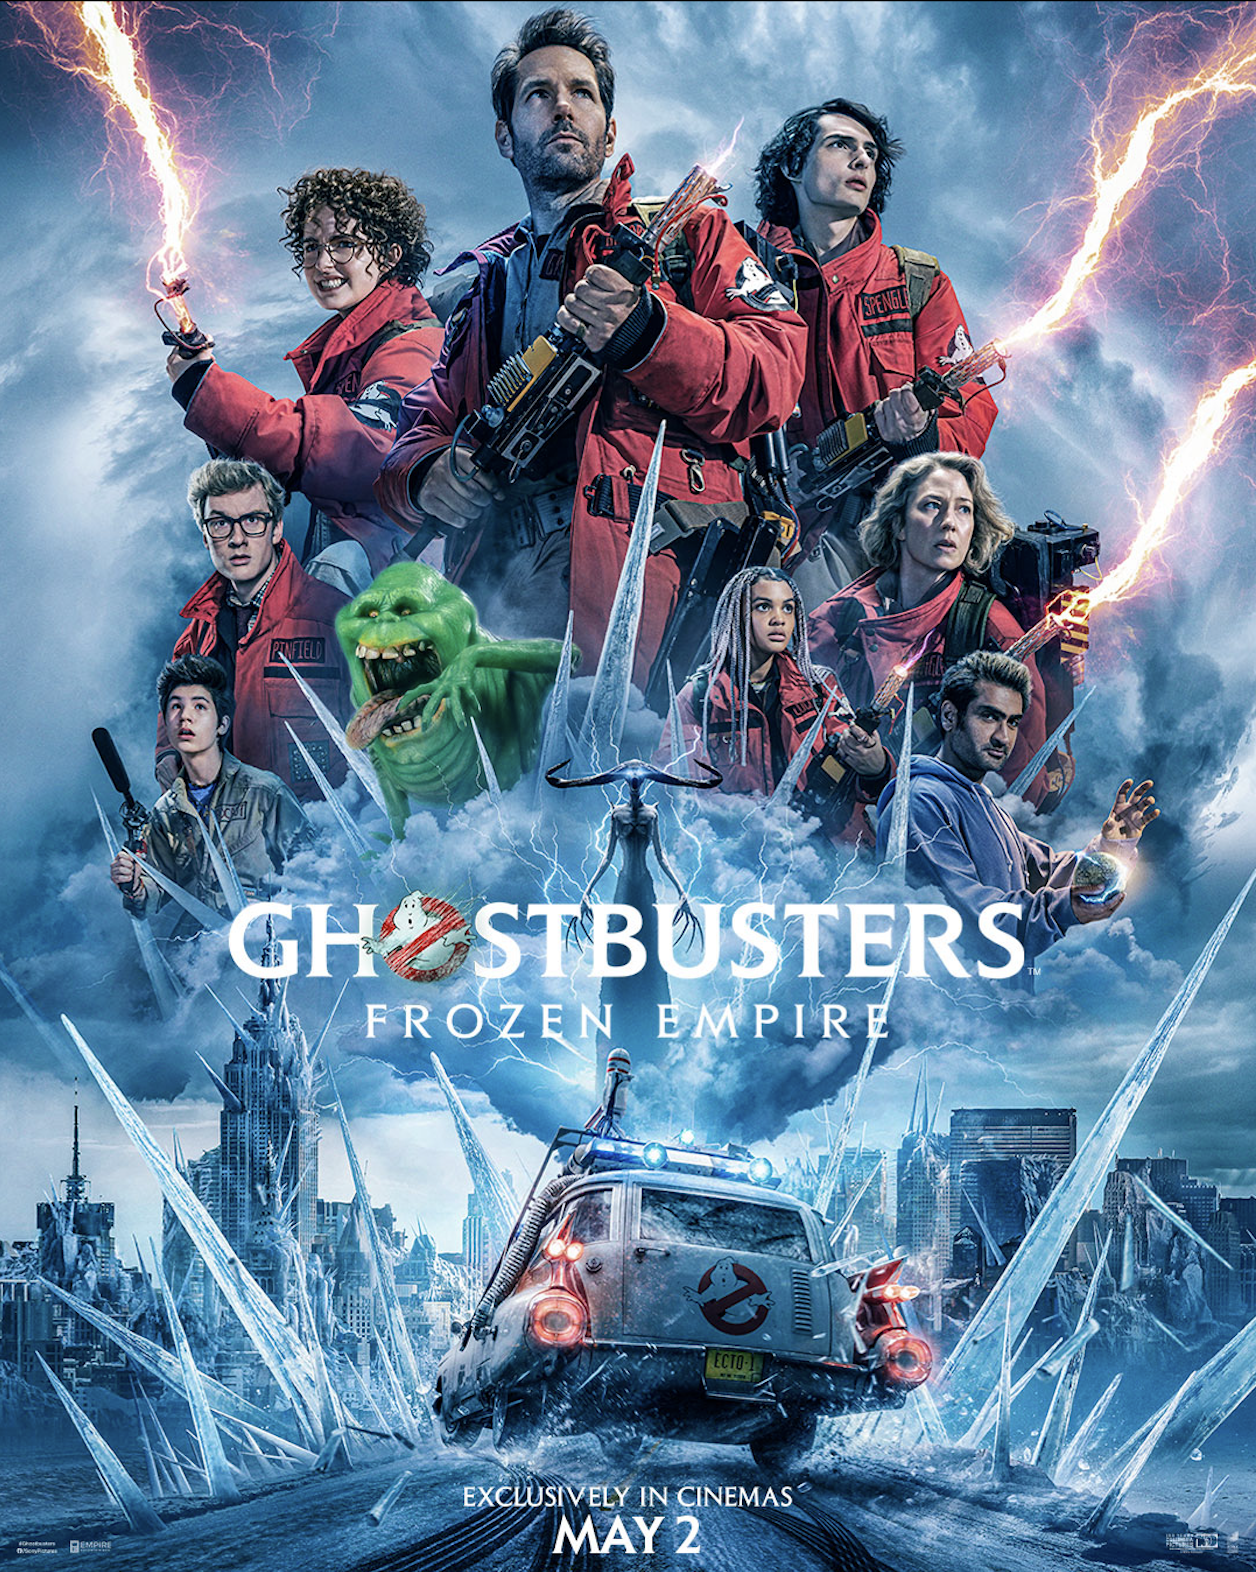 فيلم Ghostbusters: Frozen Empire يصل إلى دور السينما في 2 مايو في جميع أنحاء الشرق الأوسط، ويوحد الأجيال في مغامرة تقشعر لها الأبدان